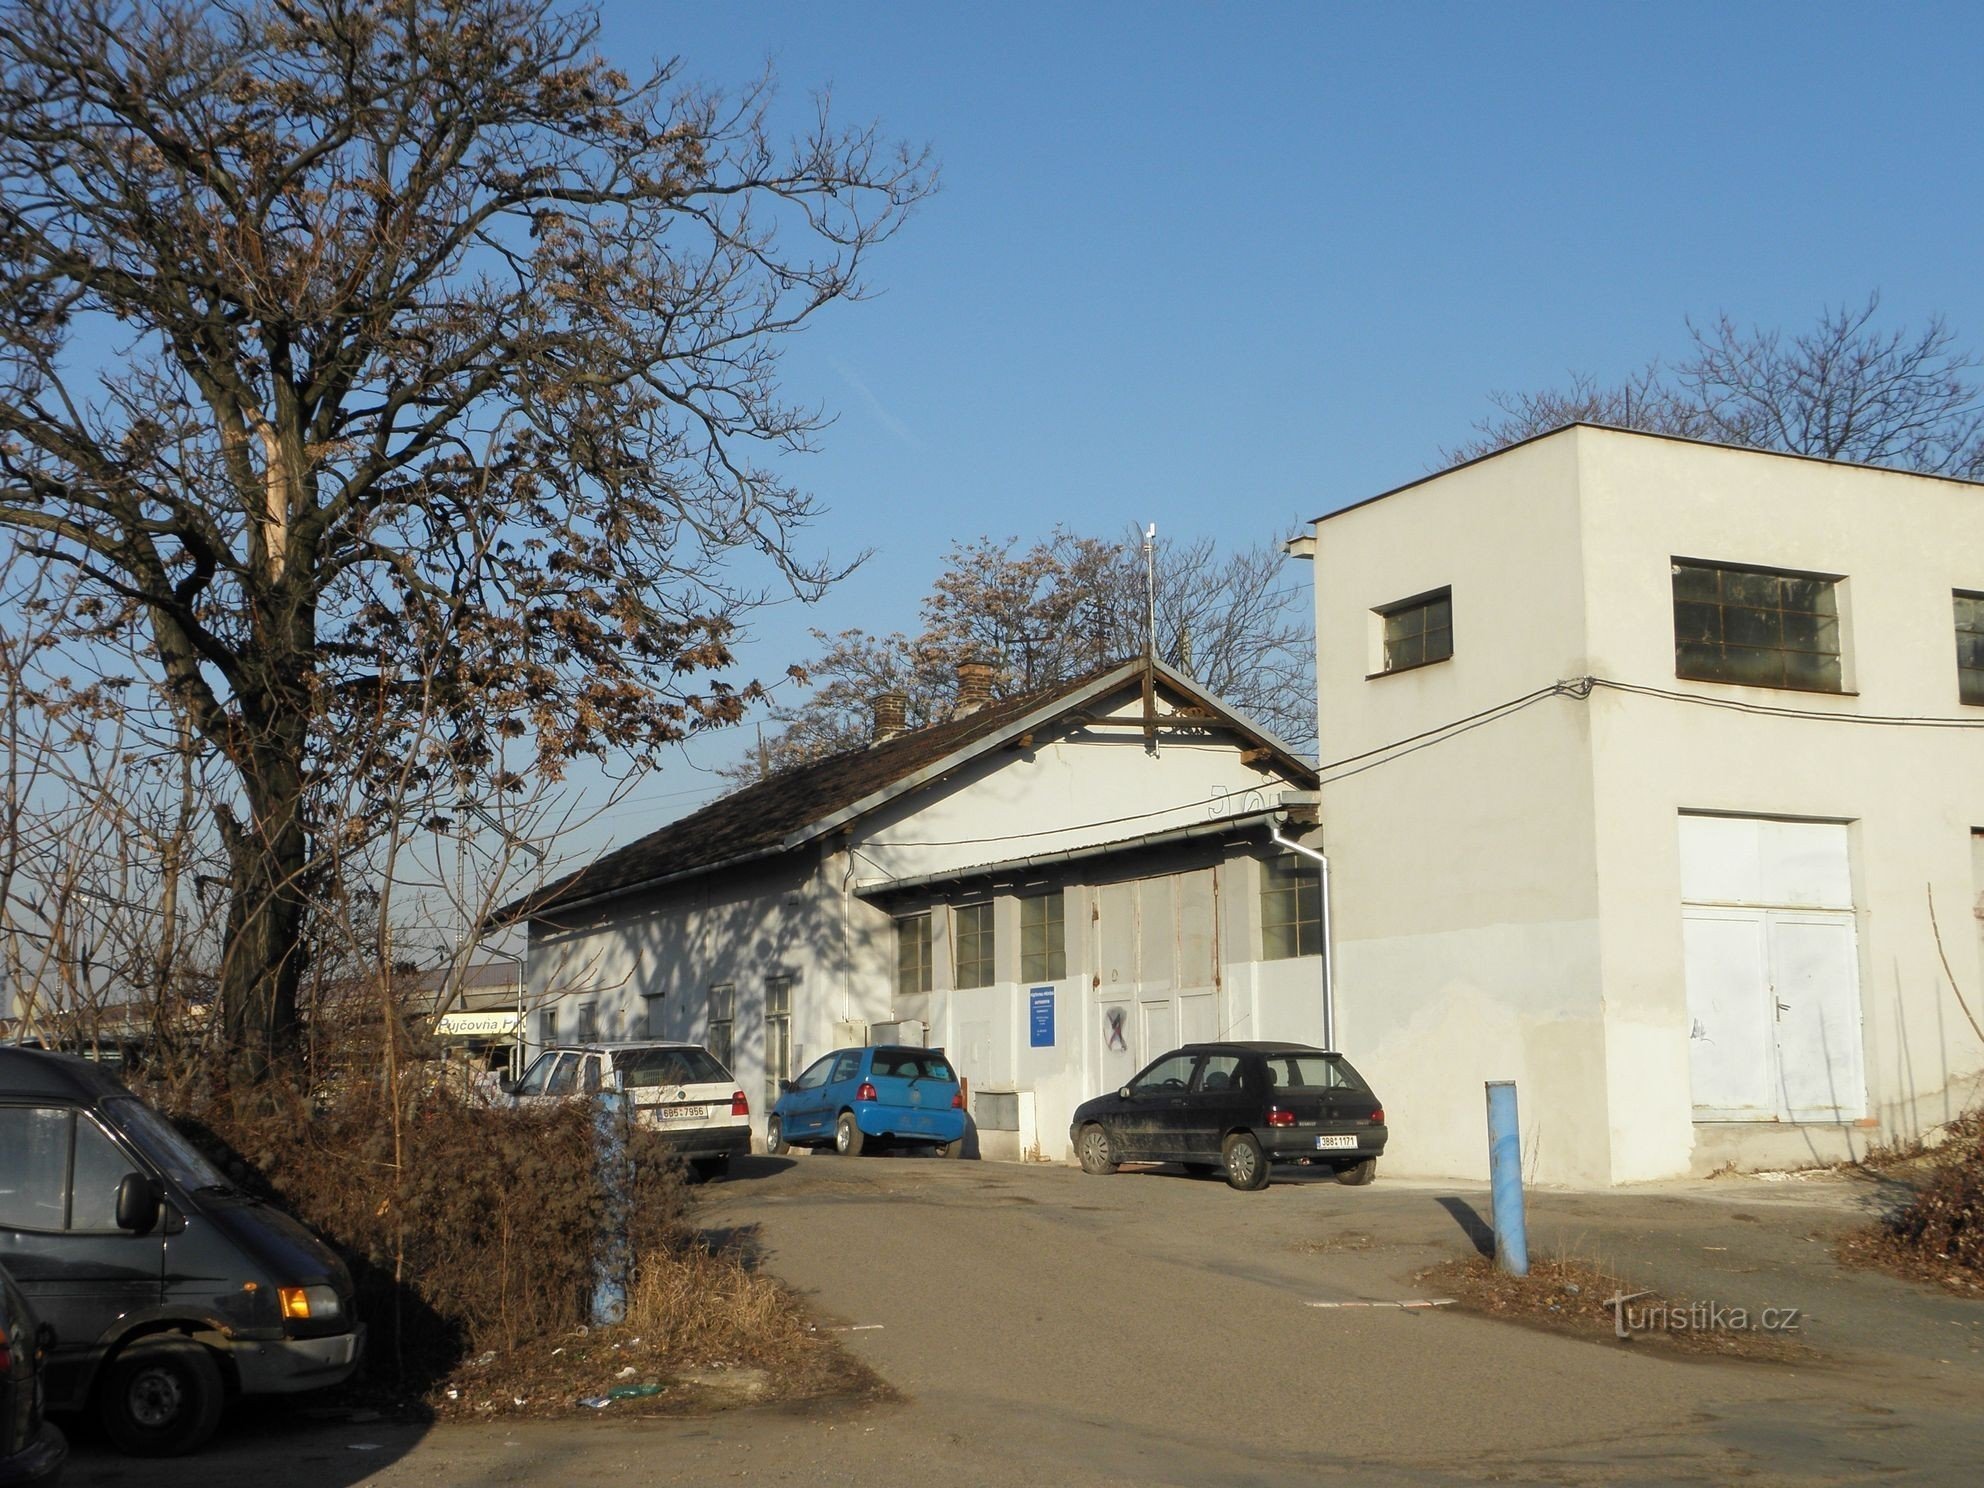 Clădirea gării Černovice - 5.3.2012 martie XNUMX